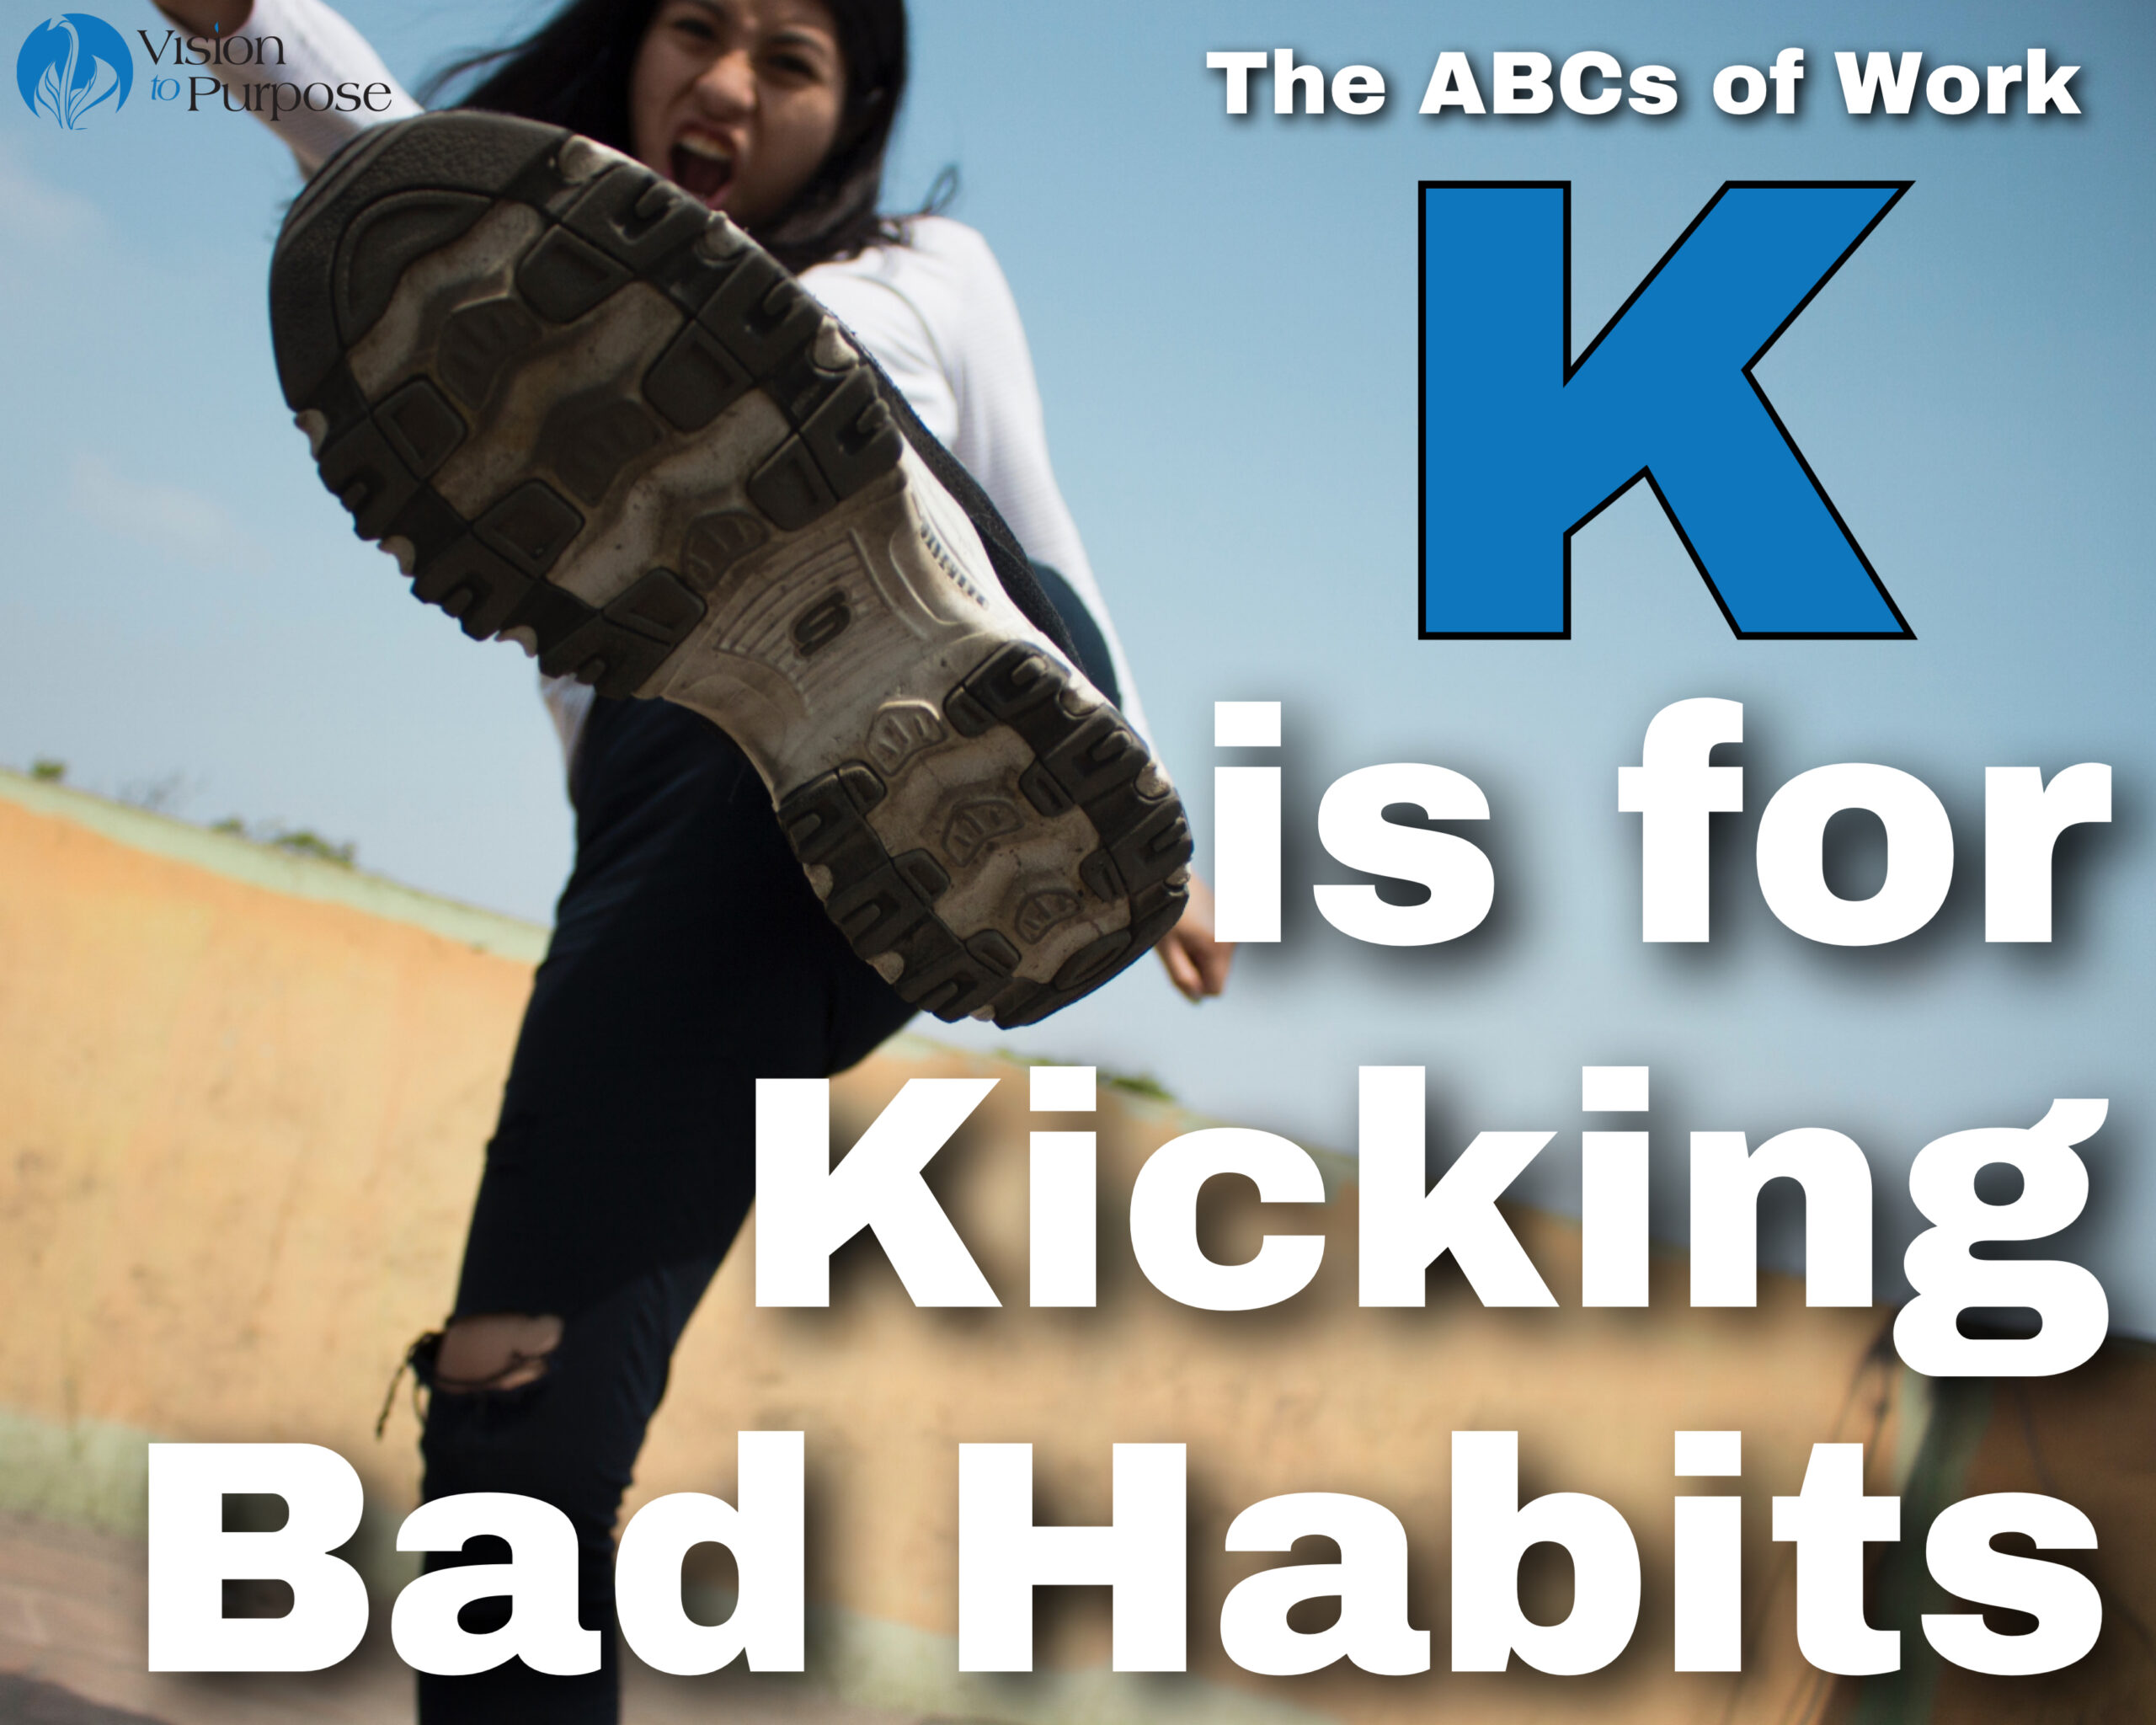 Kick bad habits